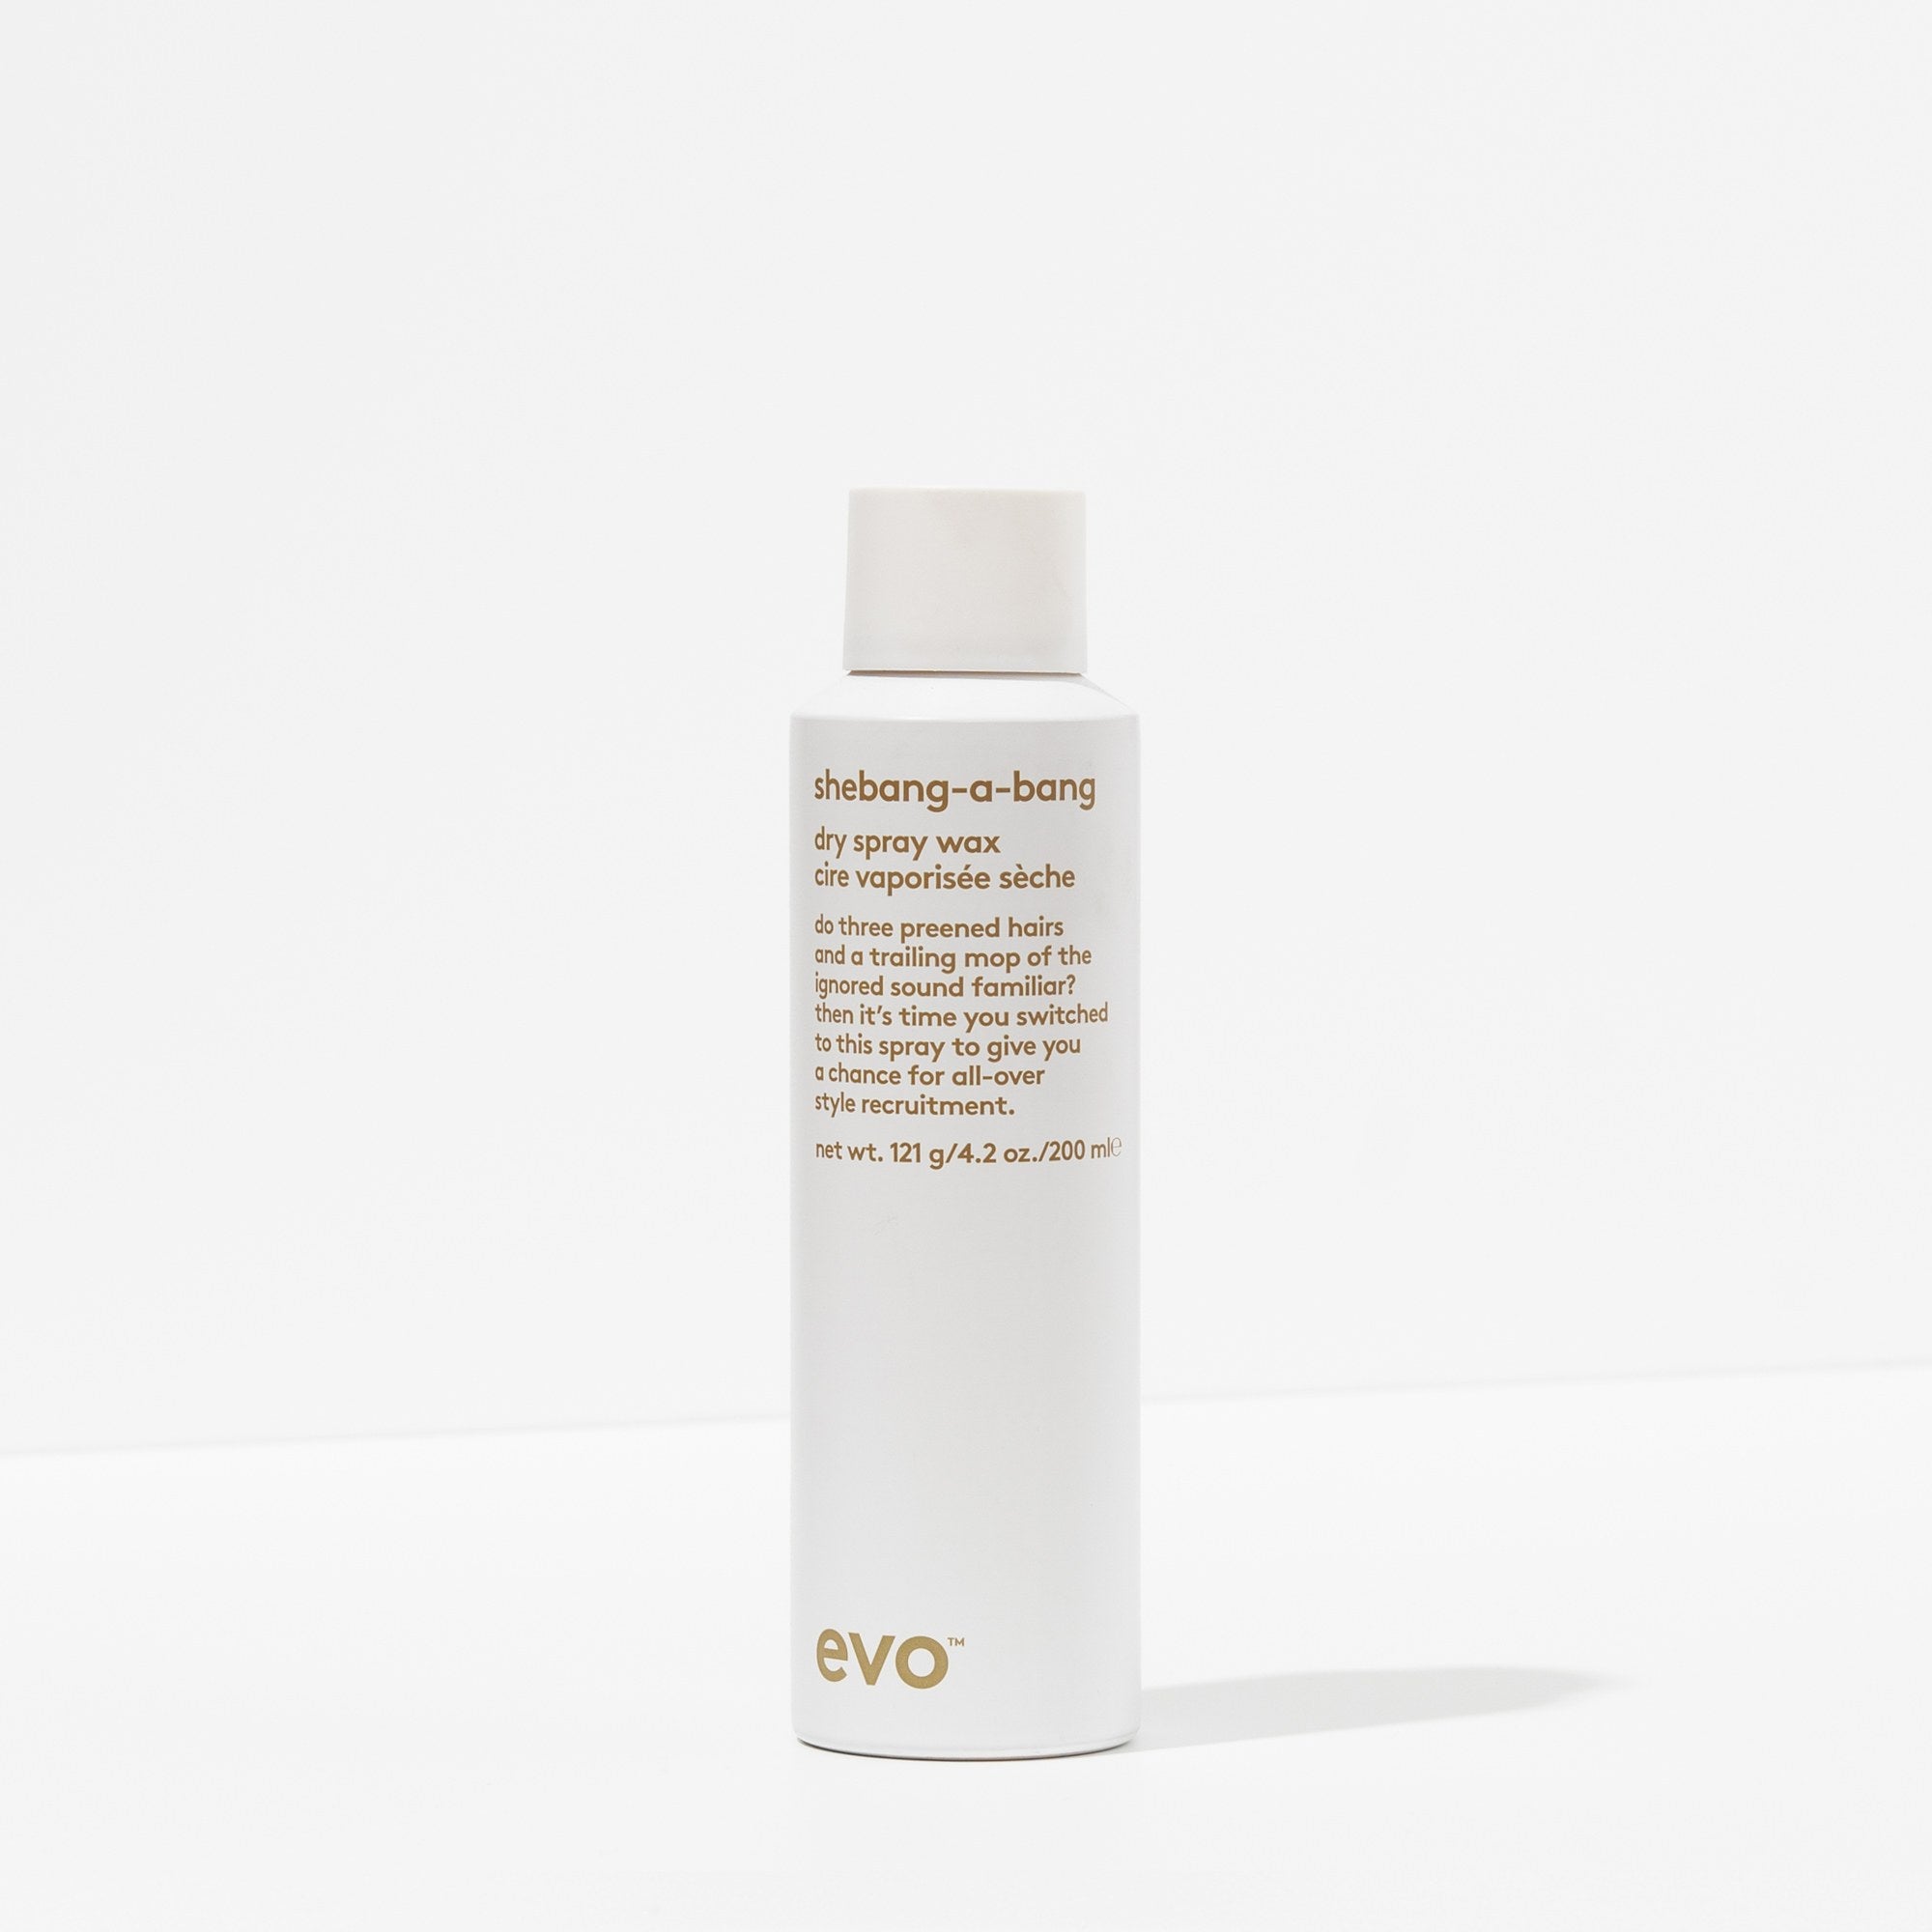 EVO Shebang-a-bang Dry Spray Wax